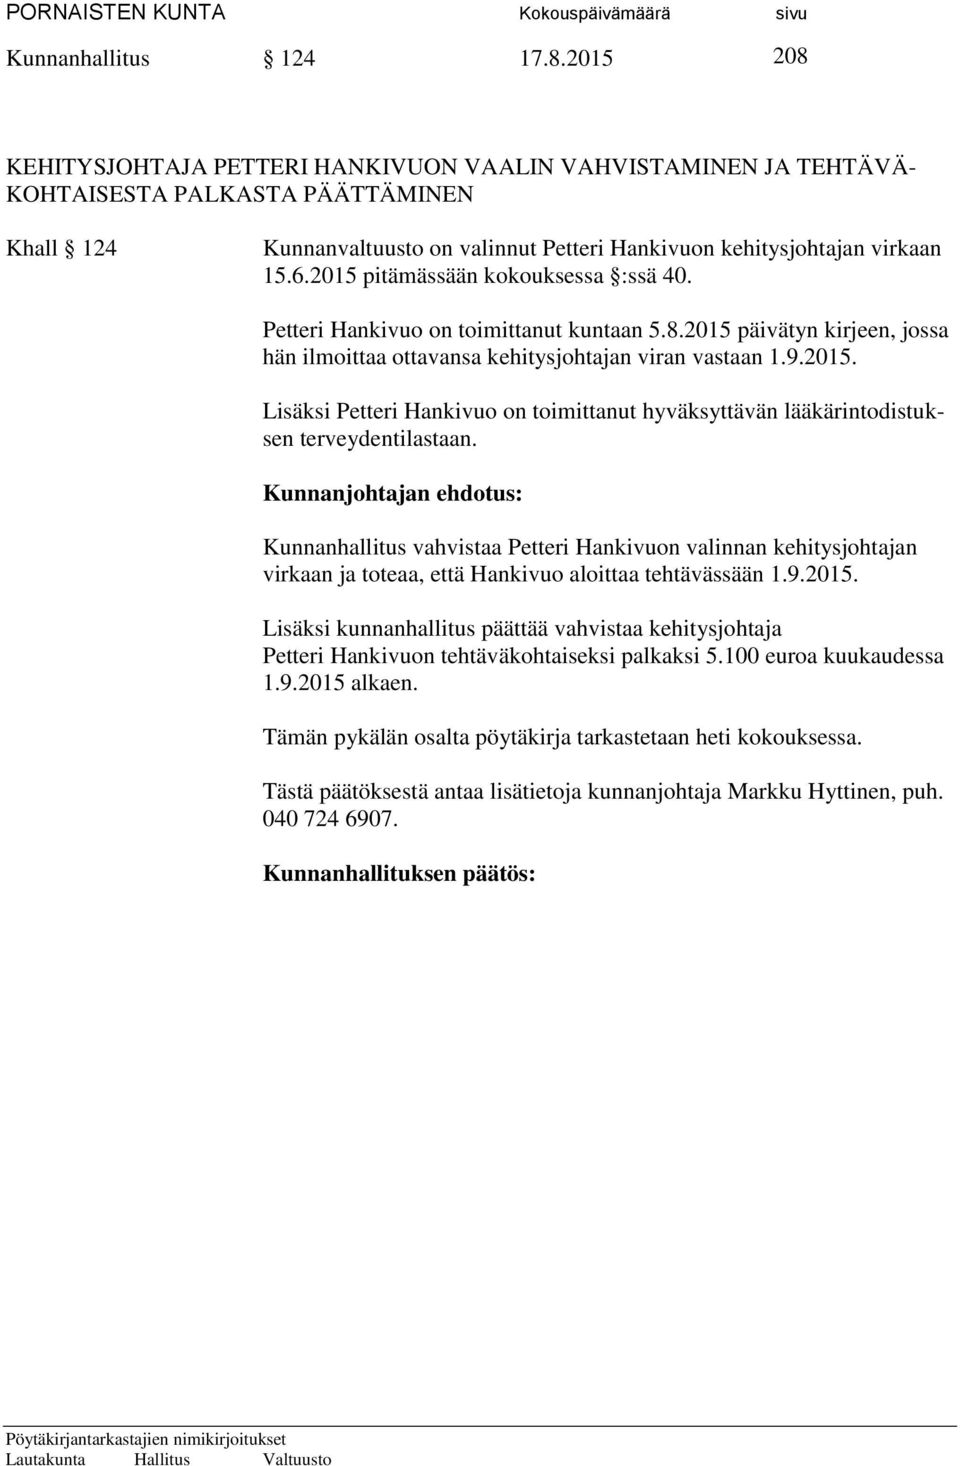 2015 pitämässään kokouksessa :ssä 40. Petteri Hankivuo on toimittanut kuntaan 5.8.2015 päivätyn kirjeen, jossa hän ilmoittaa ottavansa kehitysjohtajan viran vastaan 1.9.2015. Lisäksi Petteri Hankivuo on toimittanut hyväksyttävän lääkärintodistuksen terveydentilastaan.